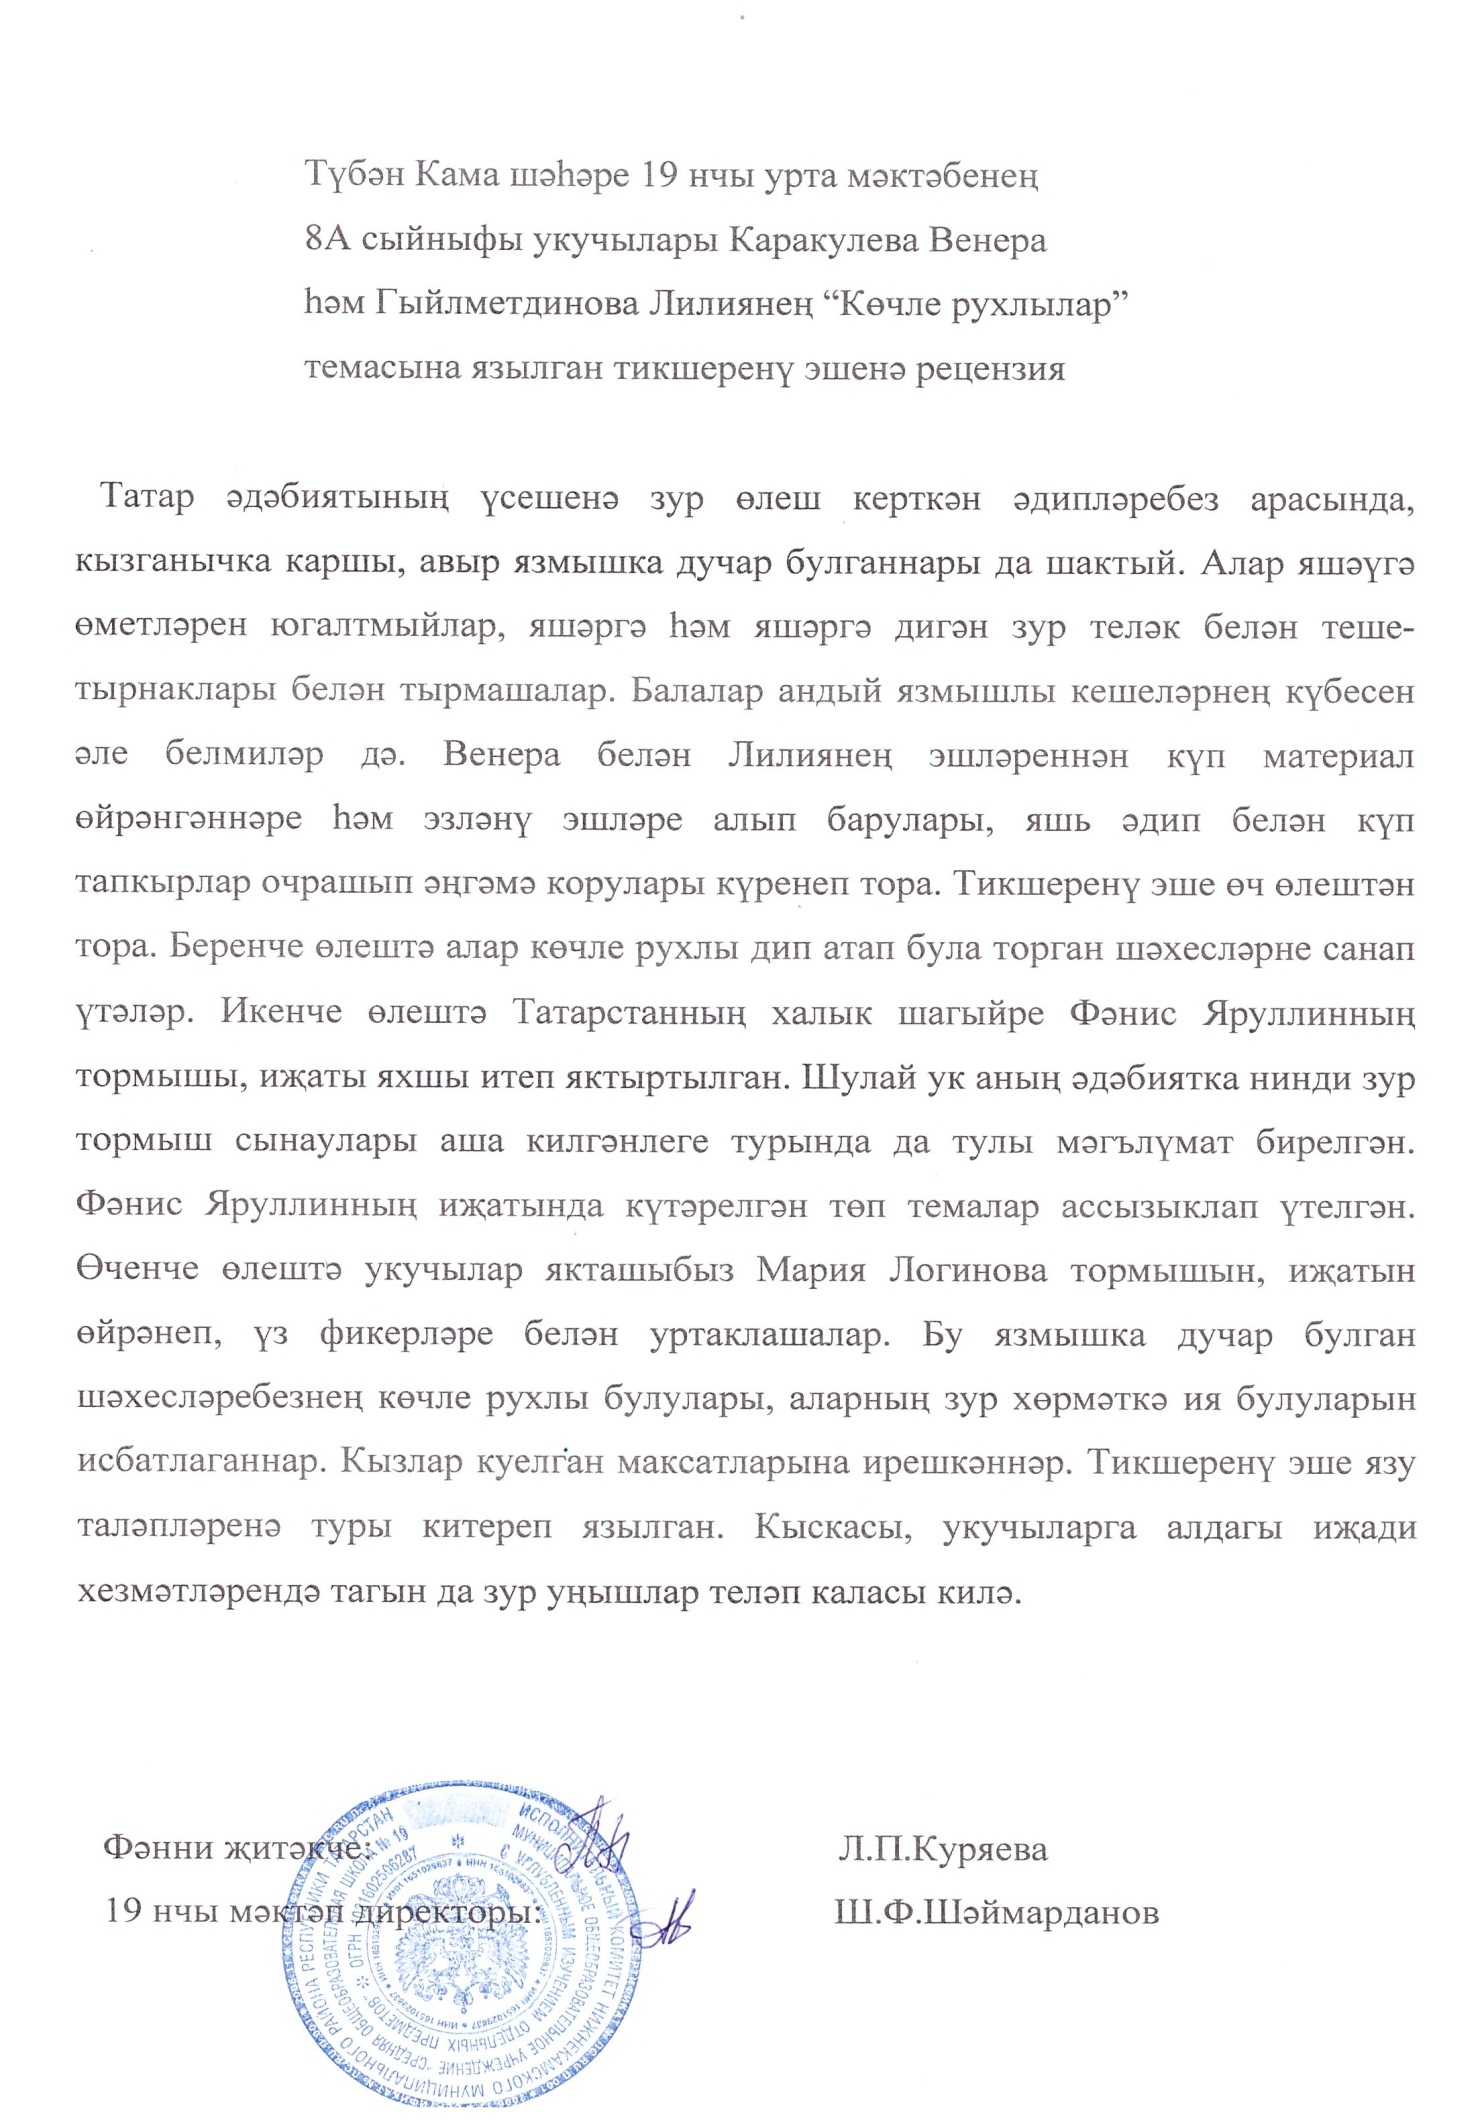 Мастер-класс для учителей татарского языка и литературы по подготовке учеников к научно-практическим конференциям